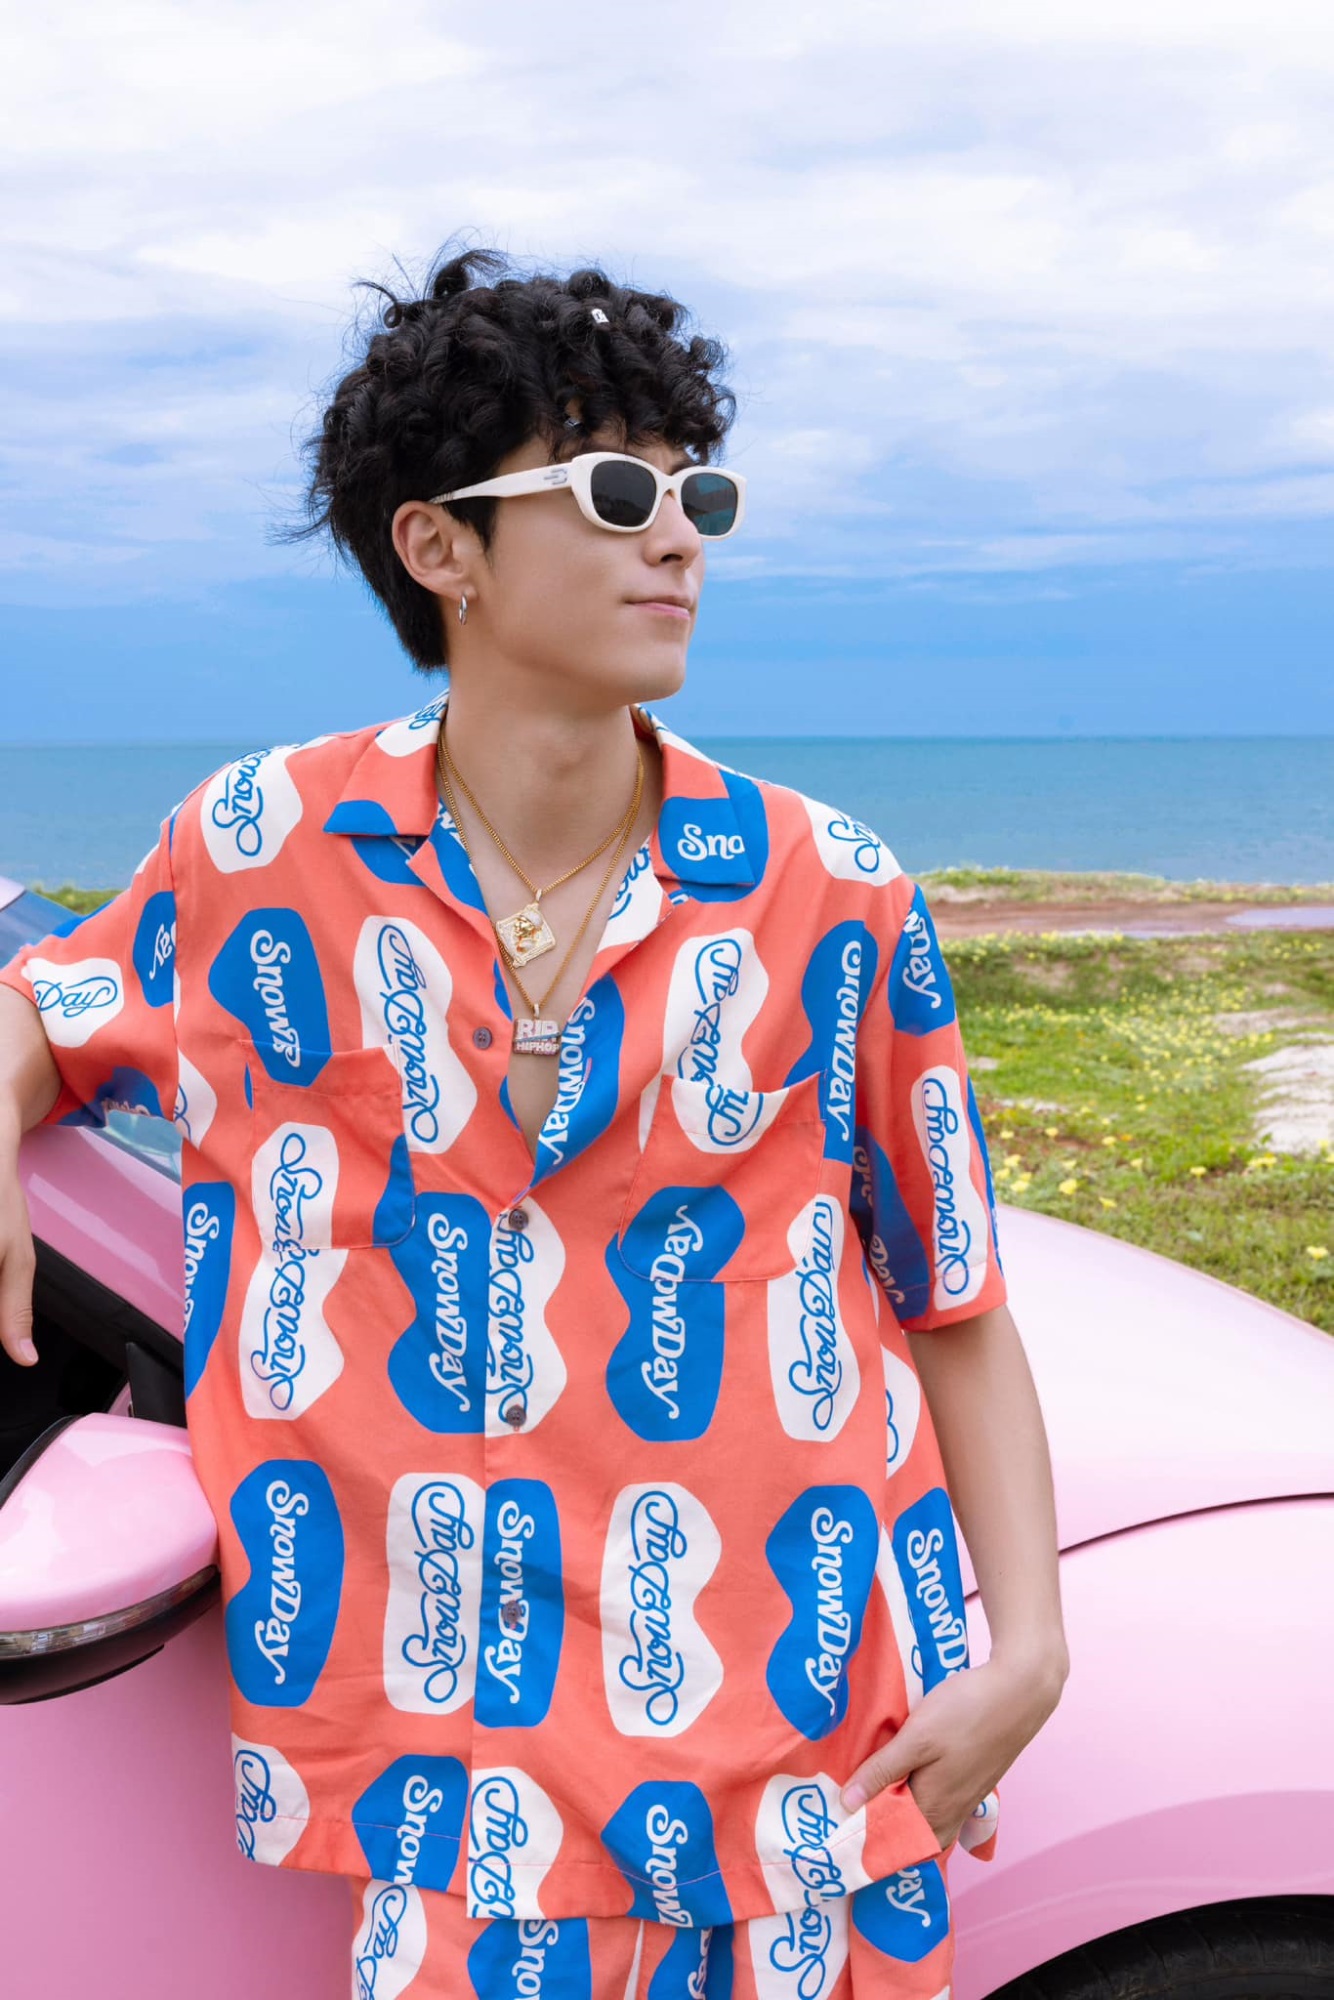 Vương Hạc Đệ khoe giọng cuốn hút trong MV 'Điệu Tango trên bờ biển', mở khóa vai trò mới: Vừa rap vừa đạo diễn cho sản phẩm âm nhạc đầu tay - Ảnh 4